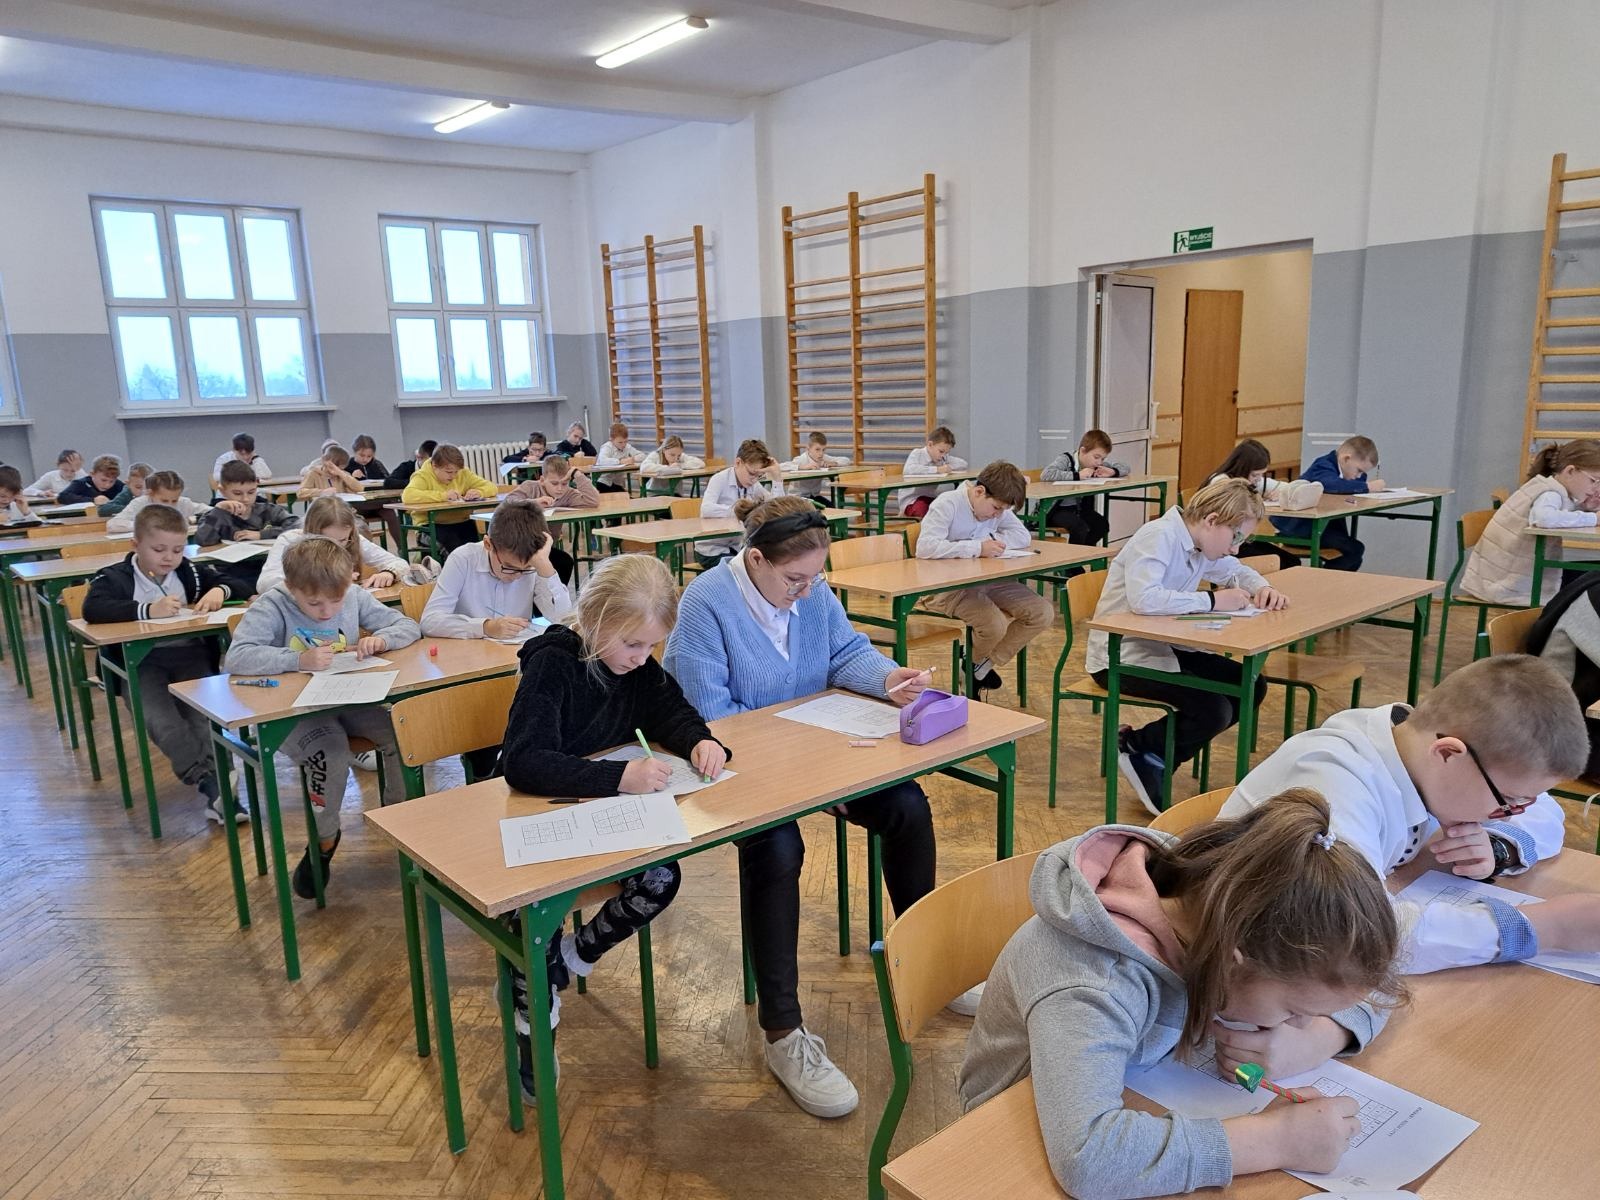 Uczniowie Szkoły Podstawowej Nr 2 im. Mikołaja Kopernika w Olecku podczas VIII edycja Powiatowego Konkursu "Sudoku lubię to"